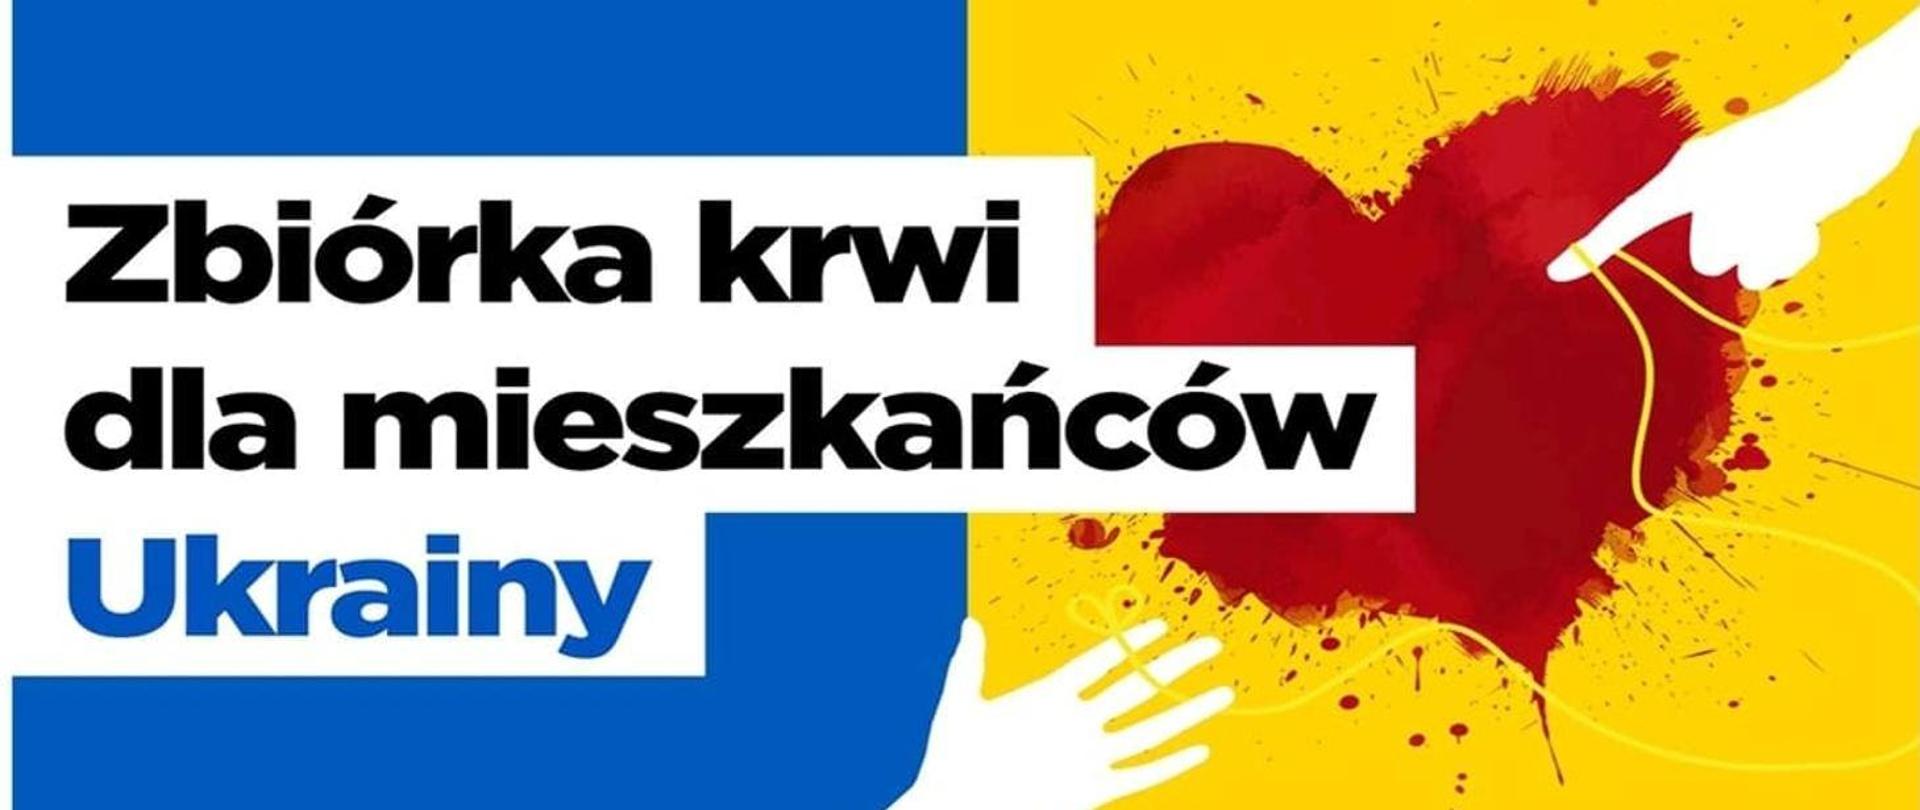 Napis Zbiórka krwi dla mieszkańców Ukrainy na tle flagi Ukrainy z czerwonym sercem